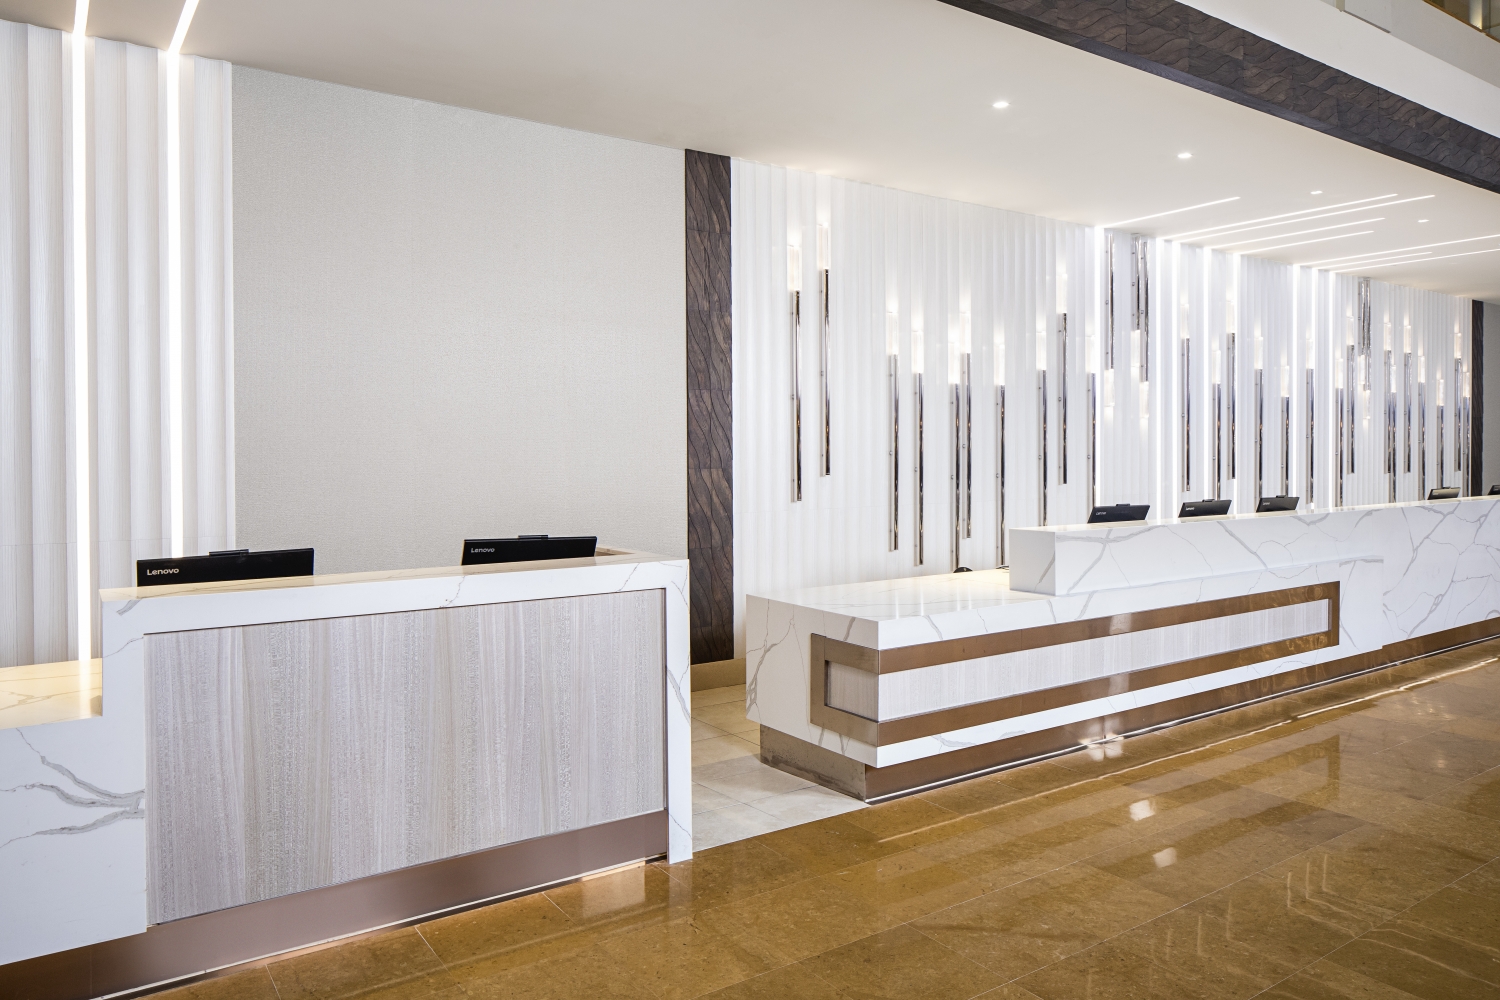 Orlando World Center Marriott - Lobby Bar/Registration